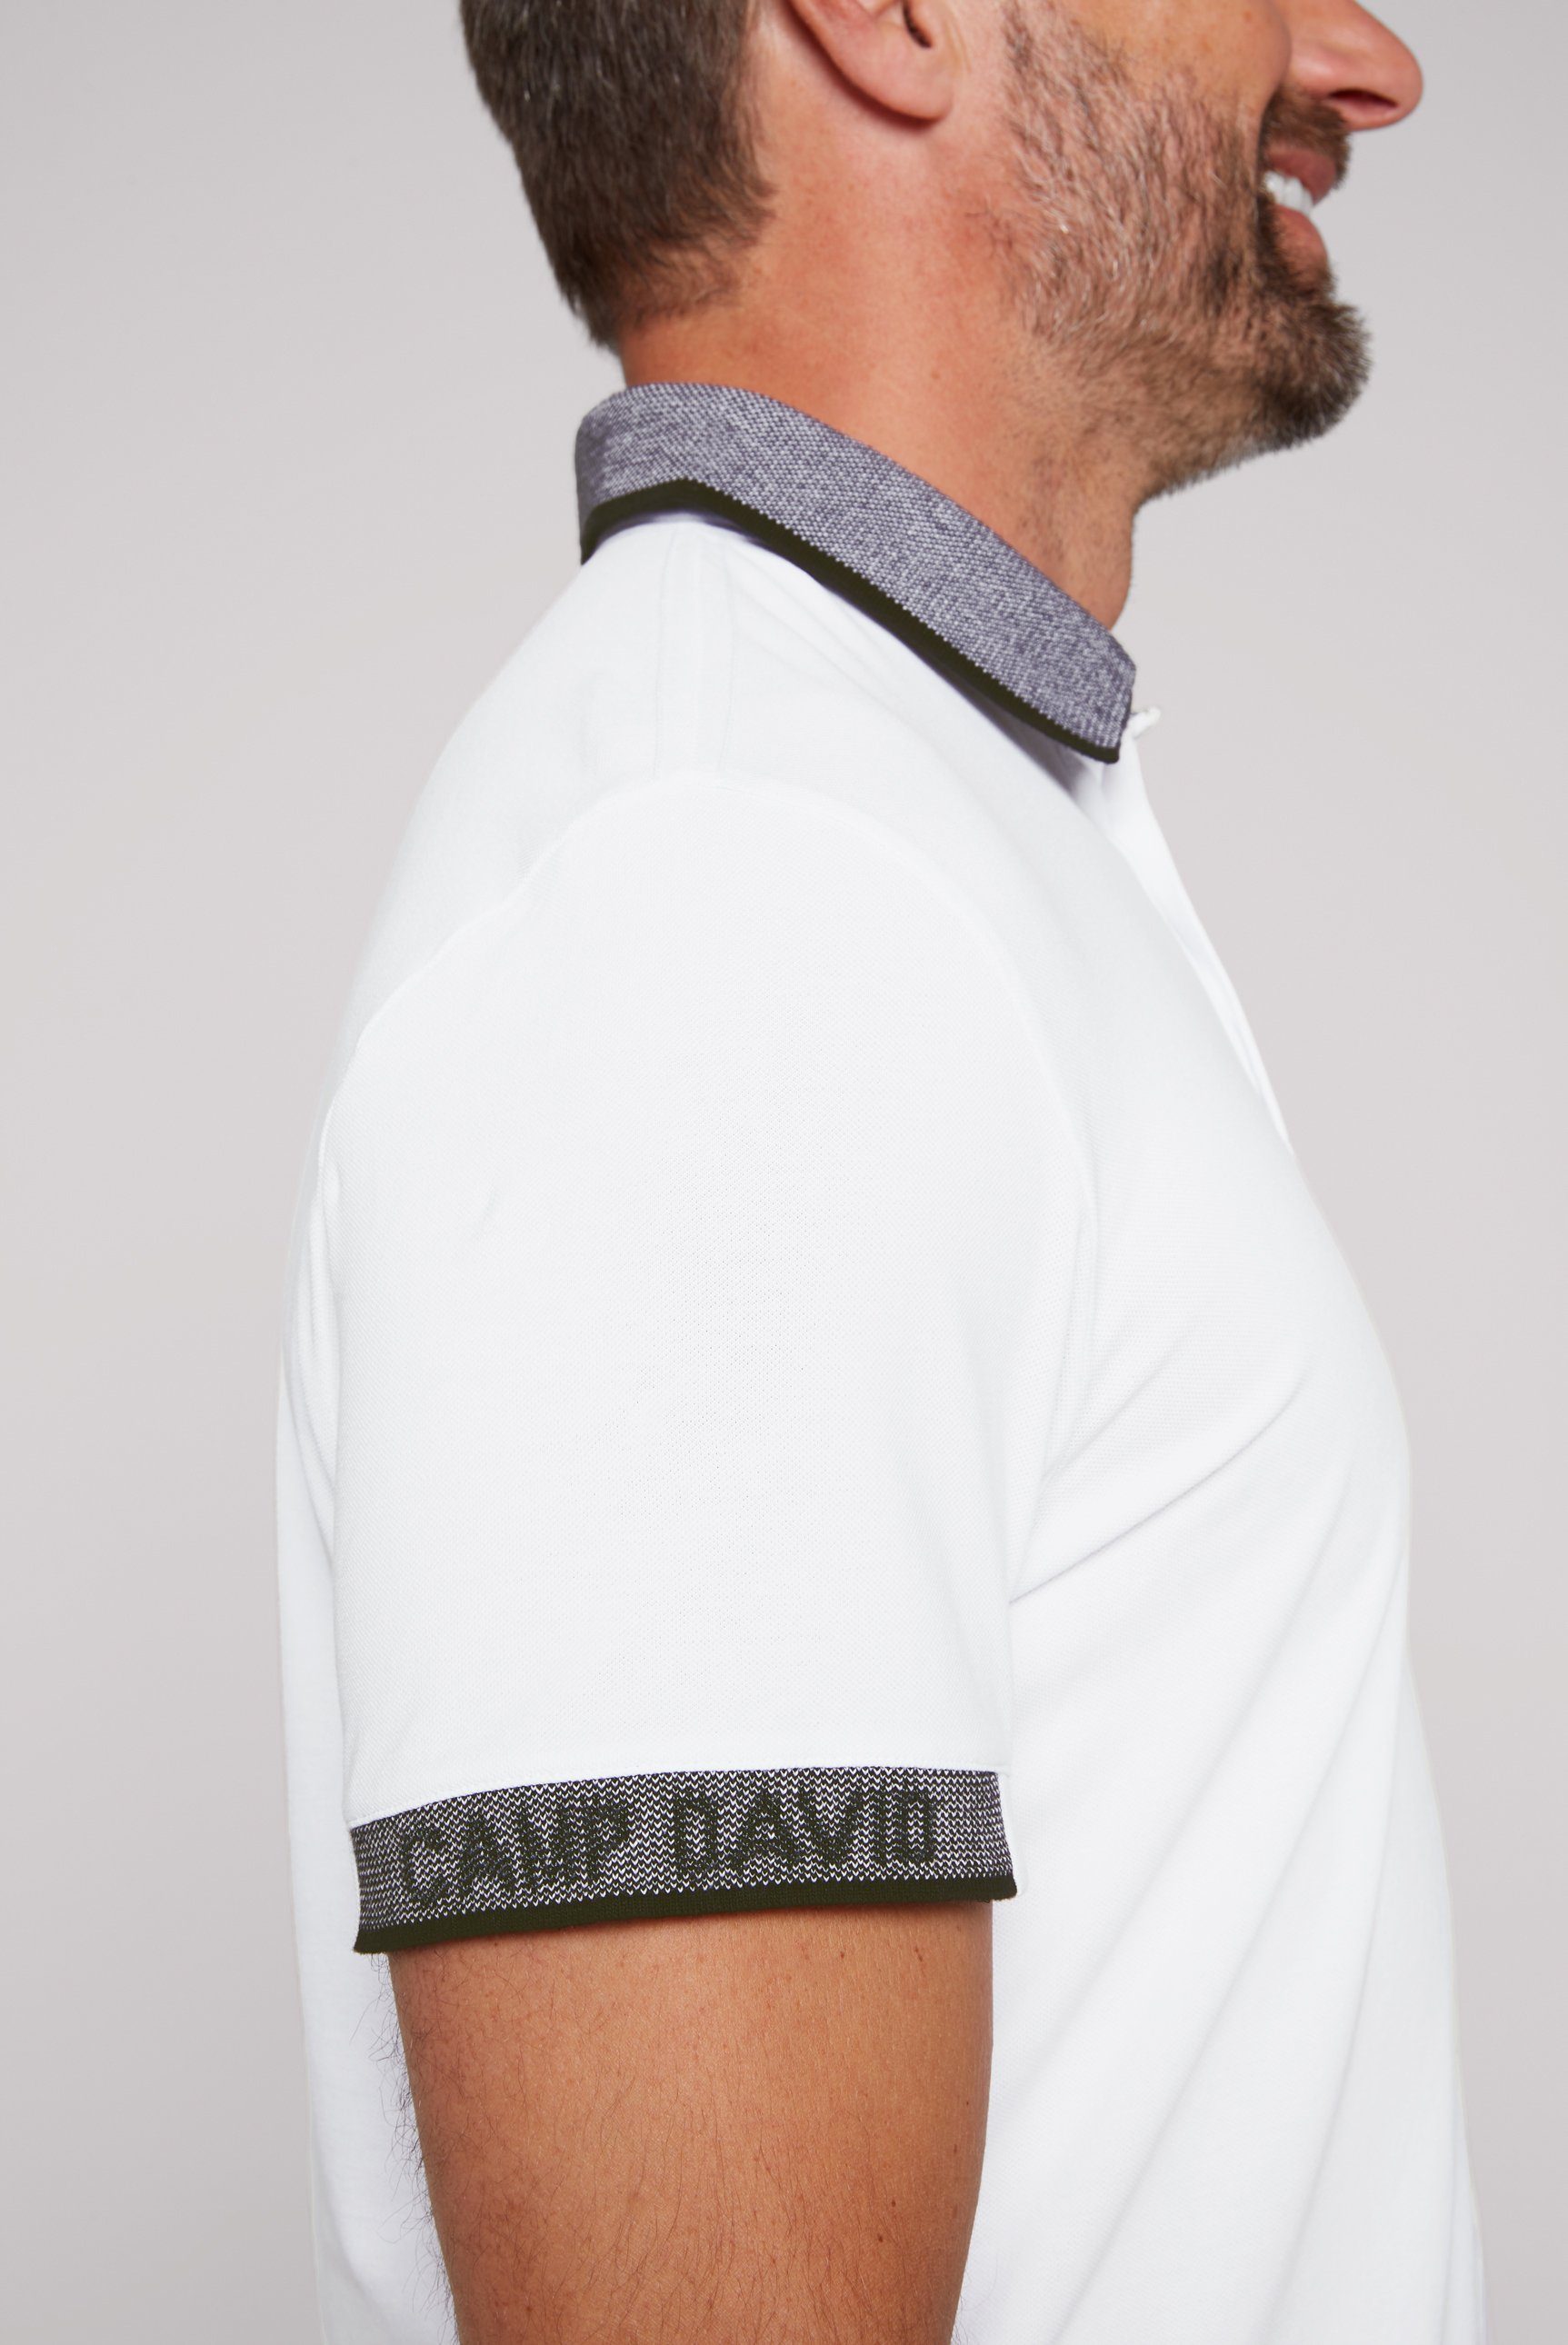 DAVID mit Poloshirt CAMP Bio-Baumwolle